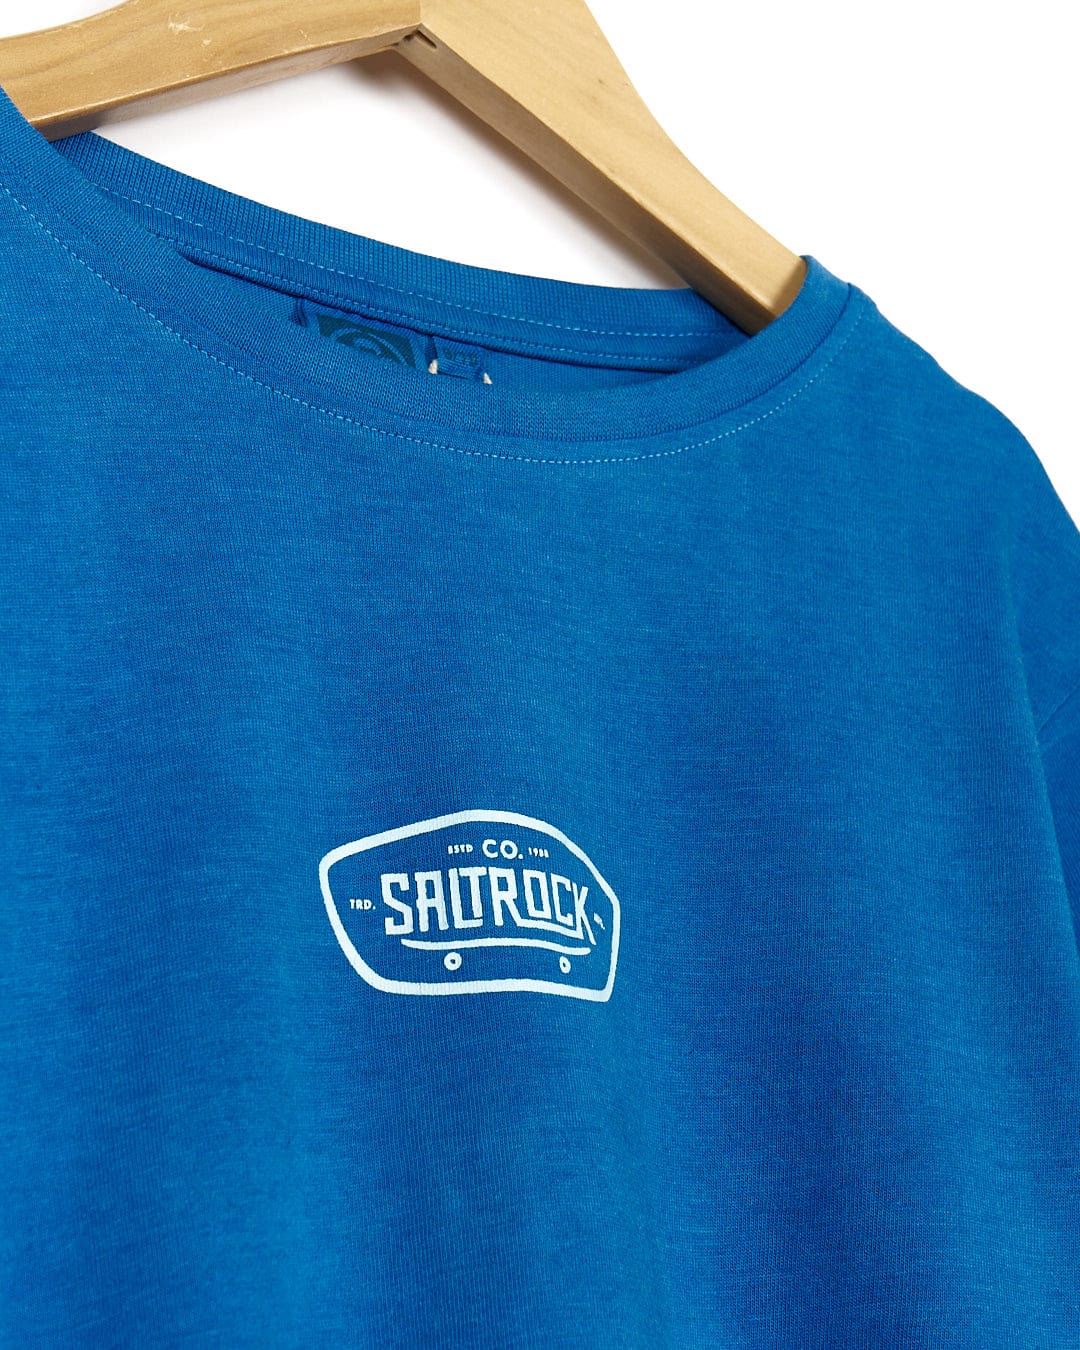 A Saltrock Hardskate - Kids Tie Dye Short Sleeve T-Shirt - Blue on a swinger.